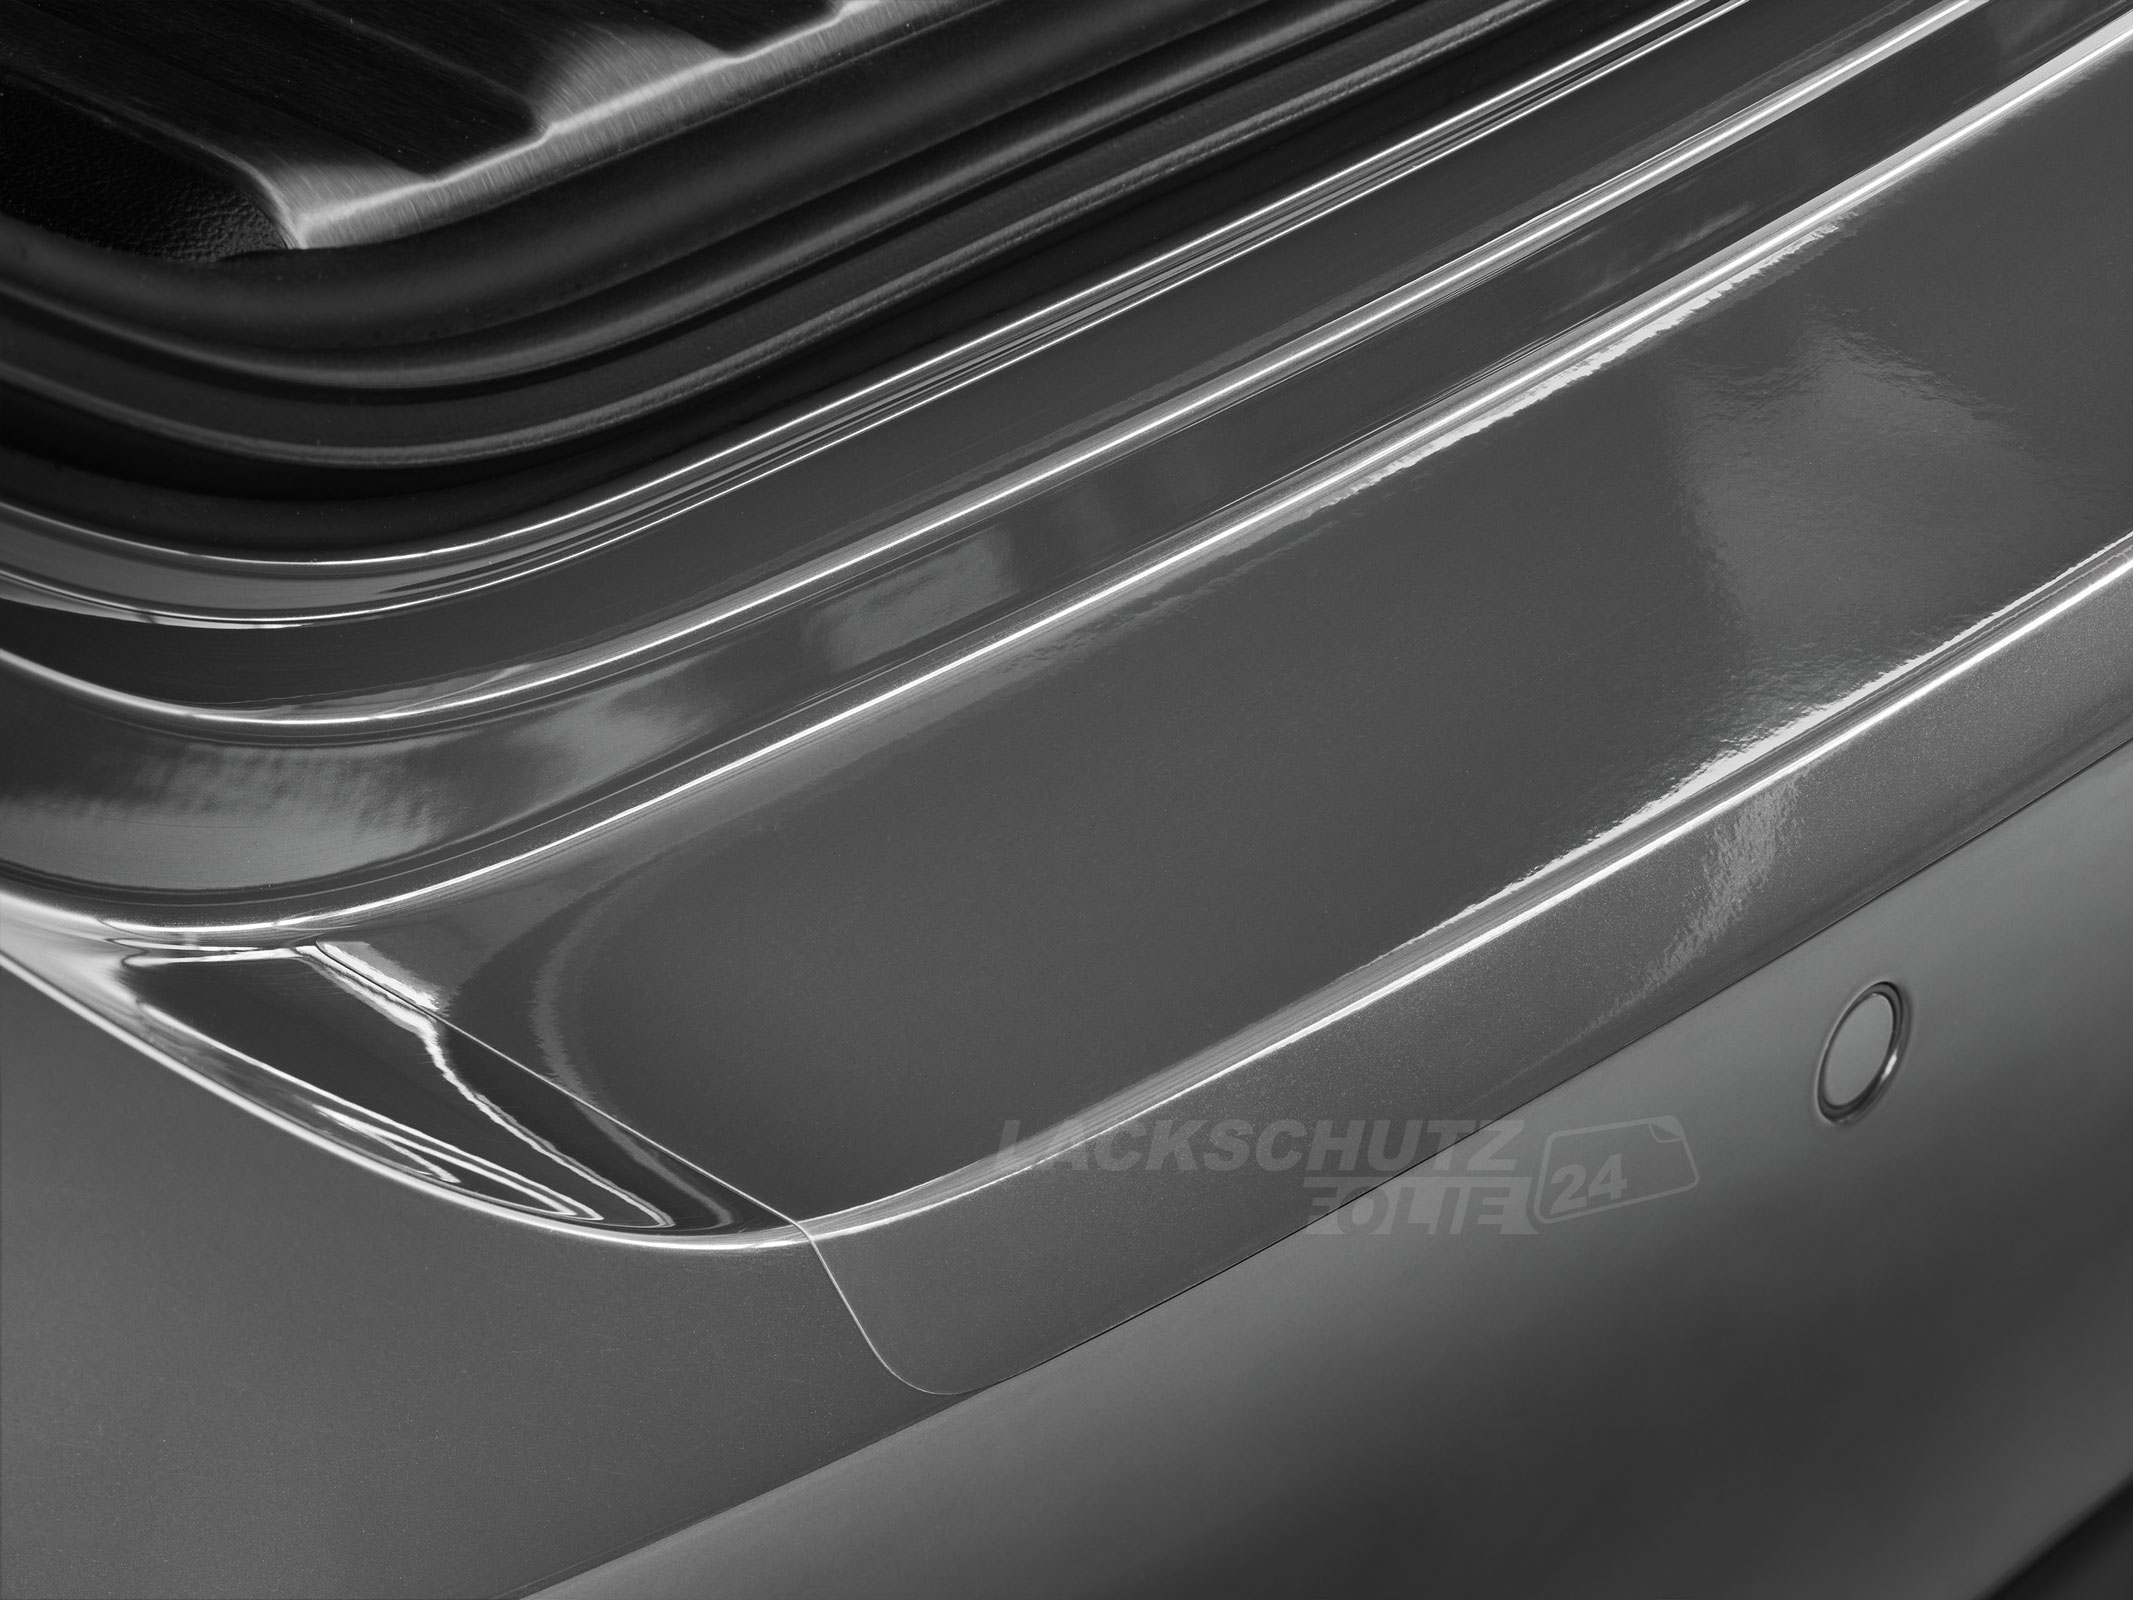 Ladekantenschutzfolie - Transparent Glatt Hochglänzend 150 µm stark für VW / Volkswagen Golf Variant (Kombi) 7, Typ AU, BJ 07/2013-2017